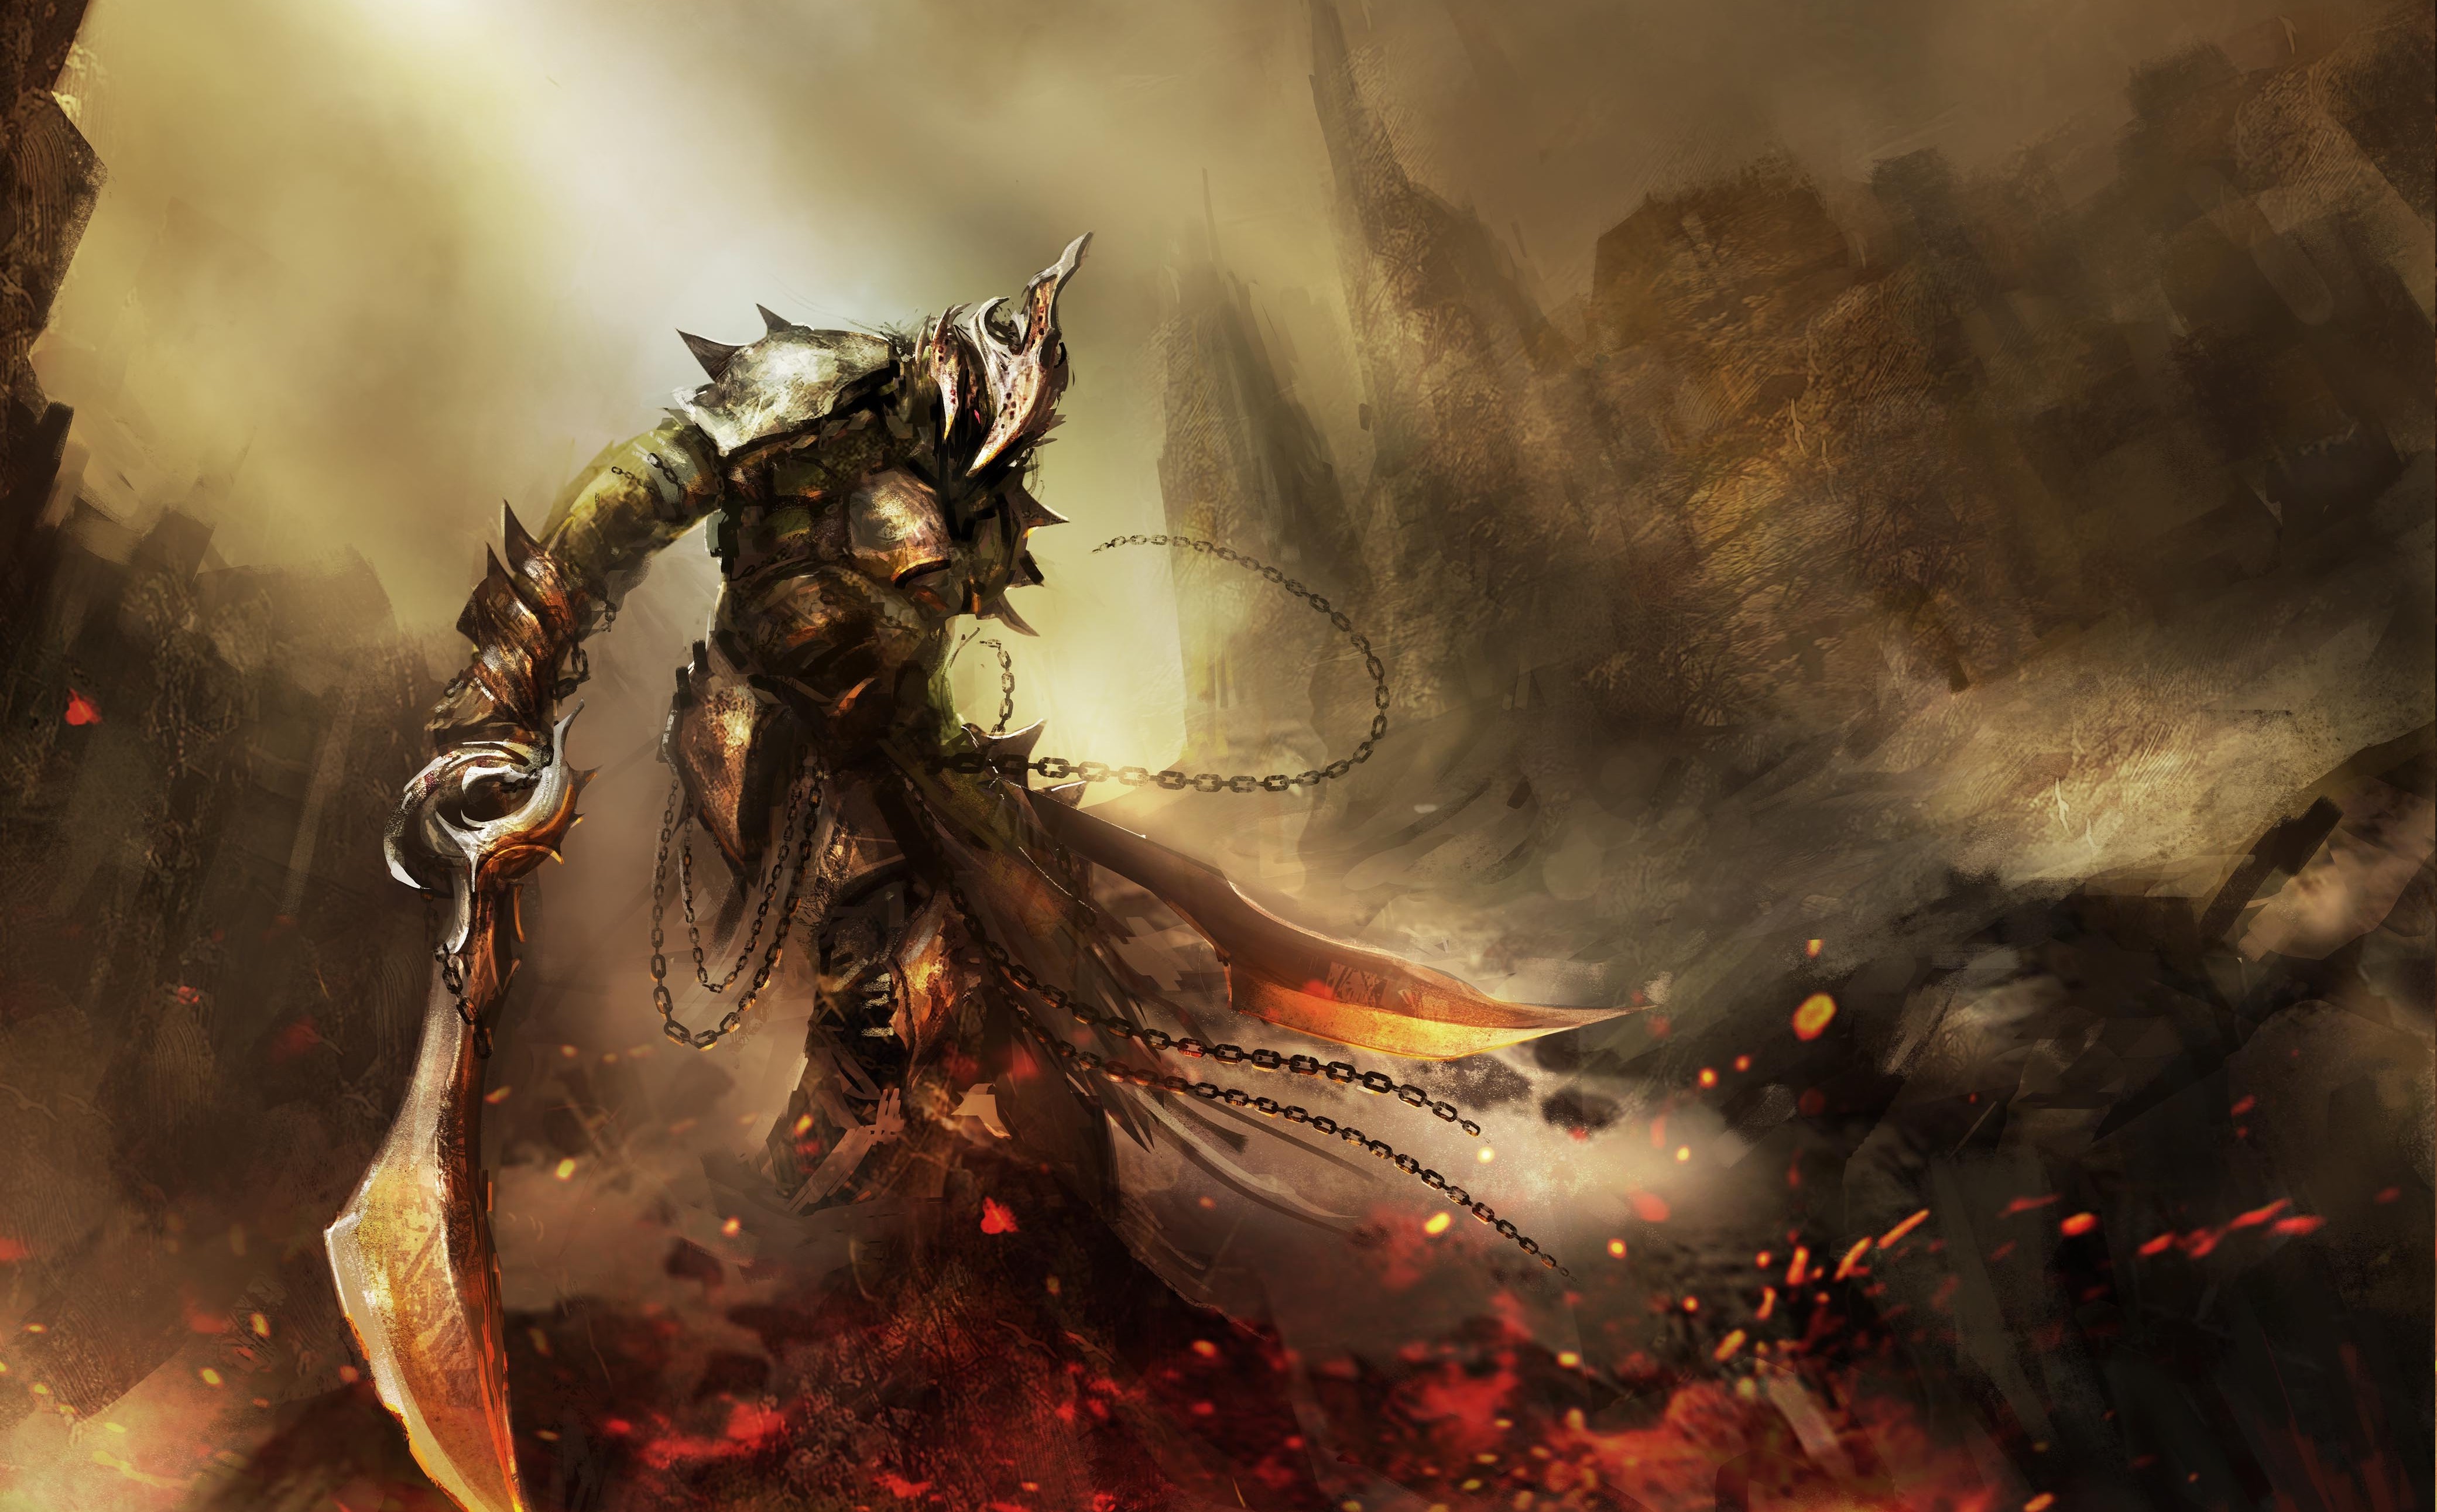 guerrero fondo de pantalla hd,cg artwork,demonio,mitología,personaje de ficción,ilustración